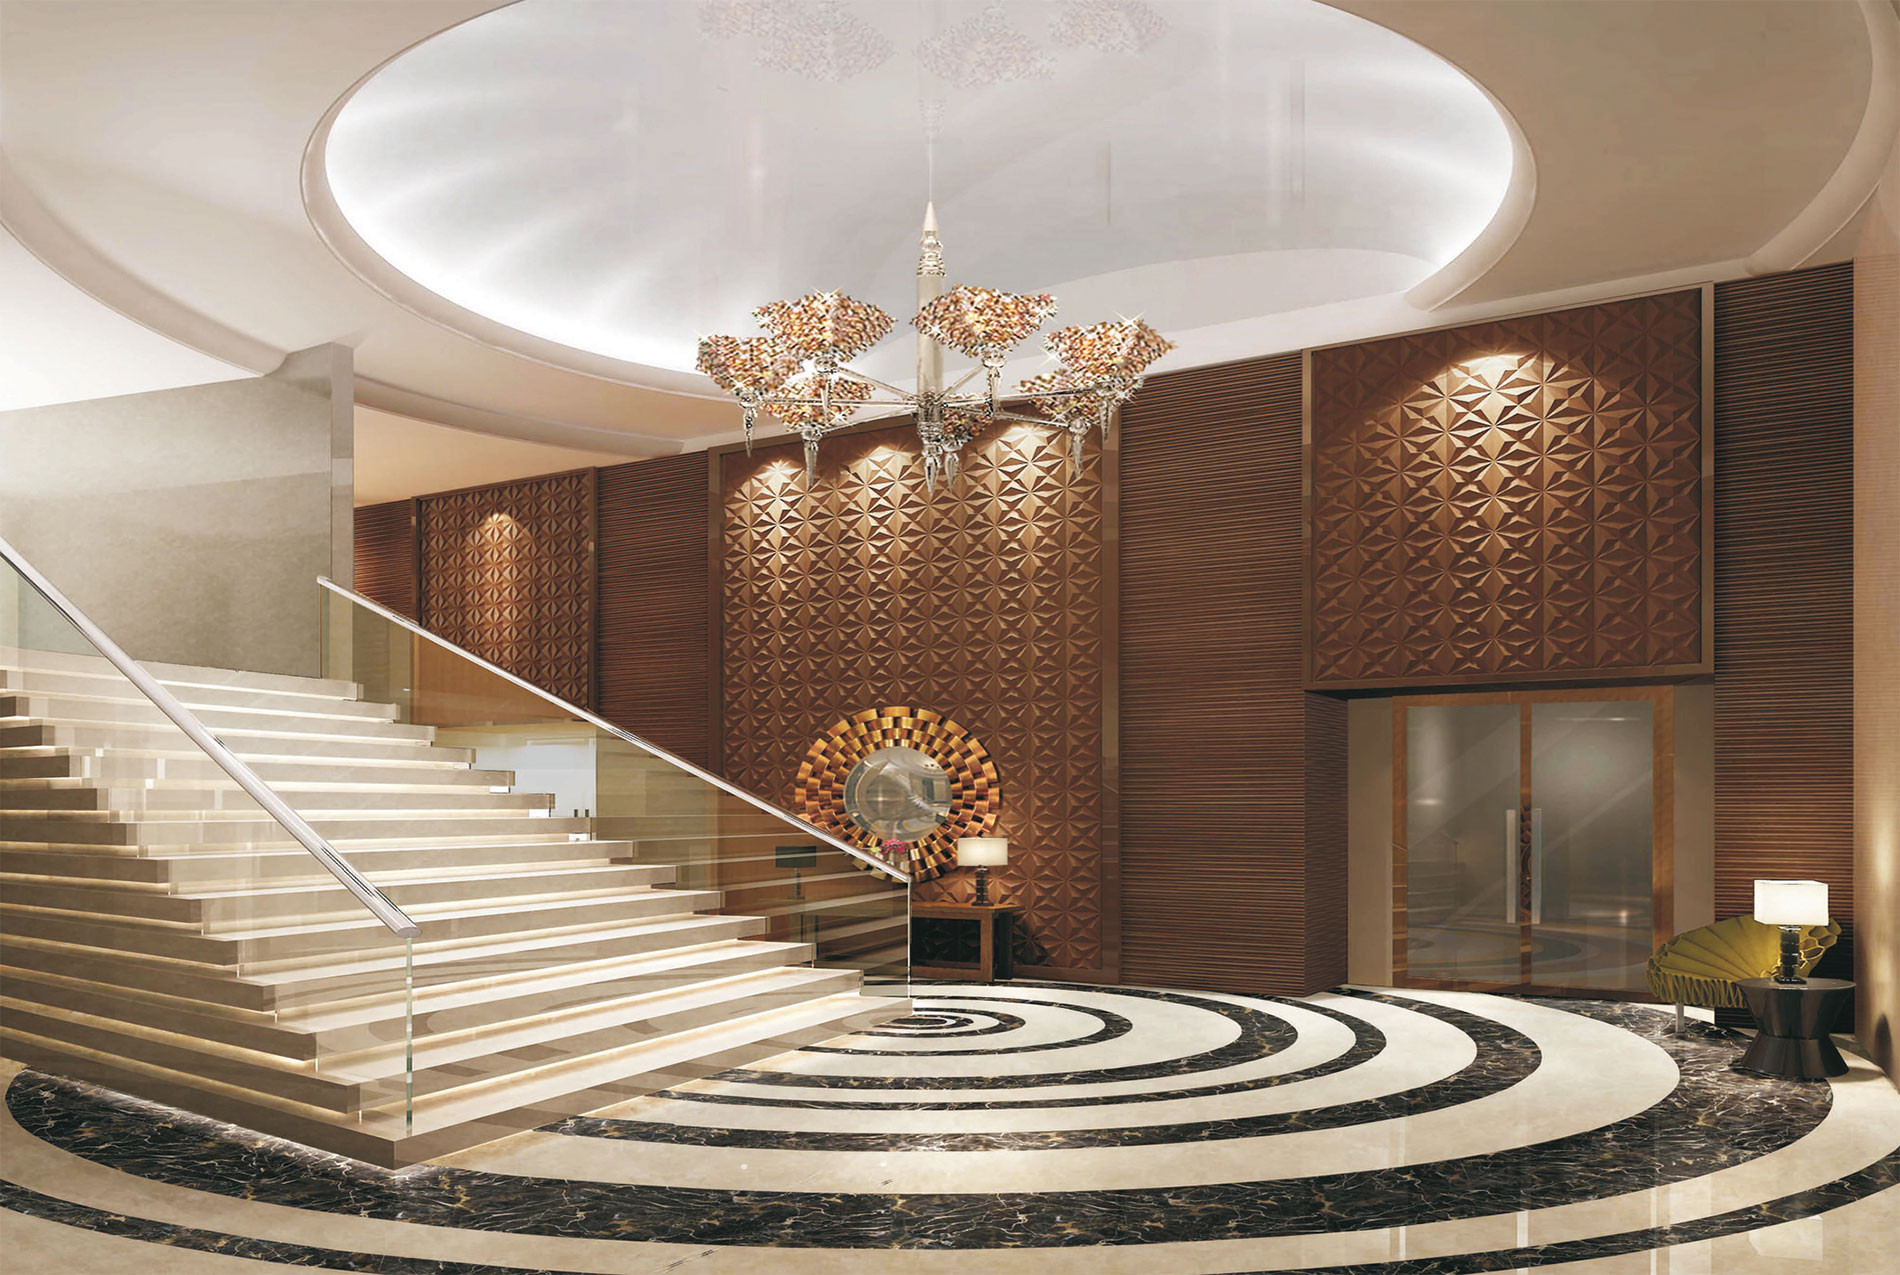 The Ritz-Carlton - khach san 5 sao theo phong cach Nhat